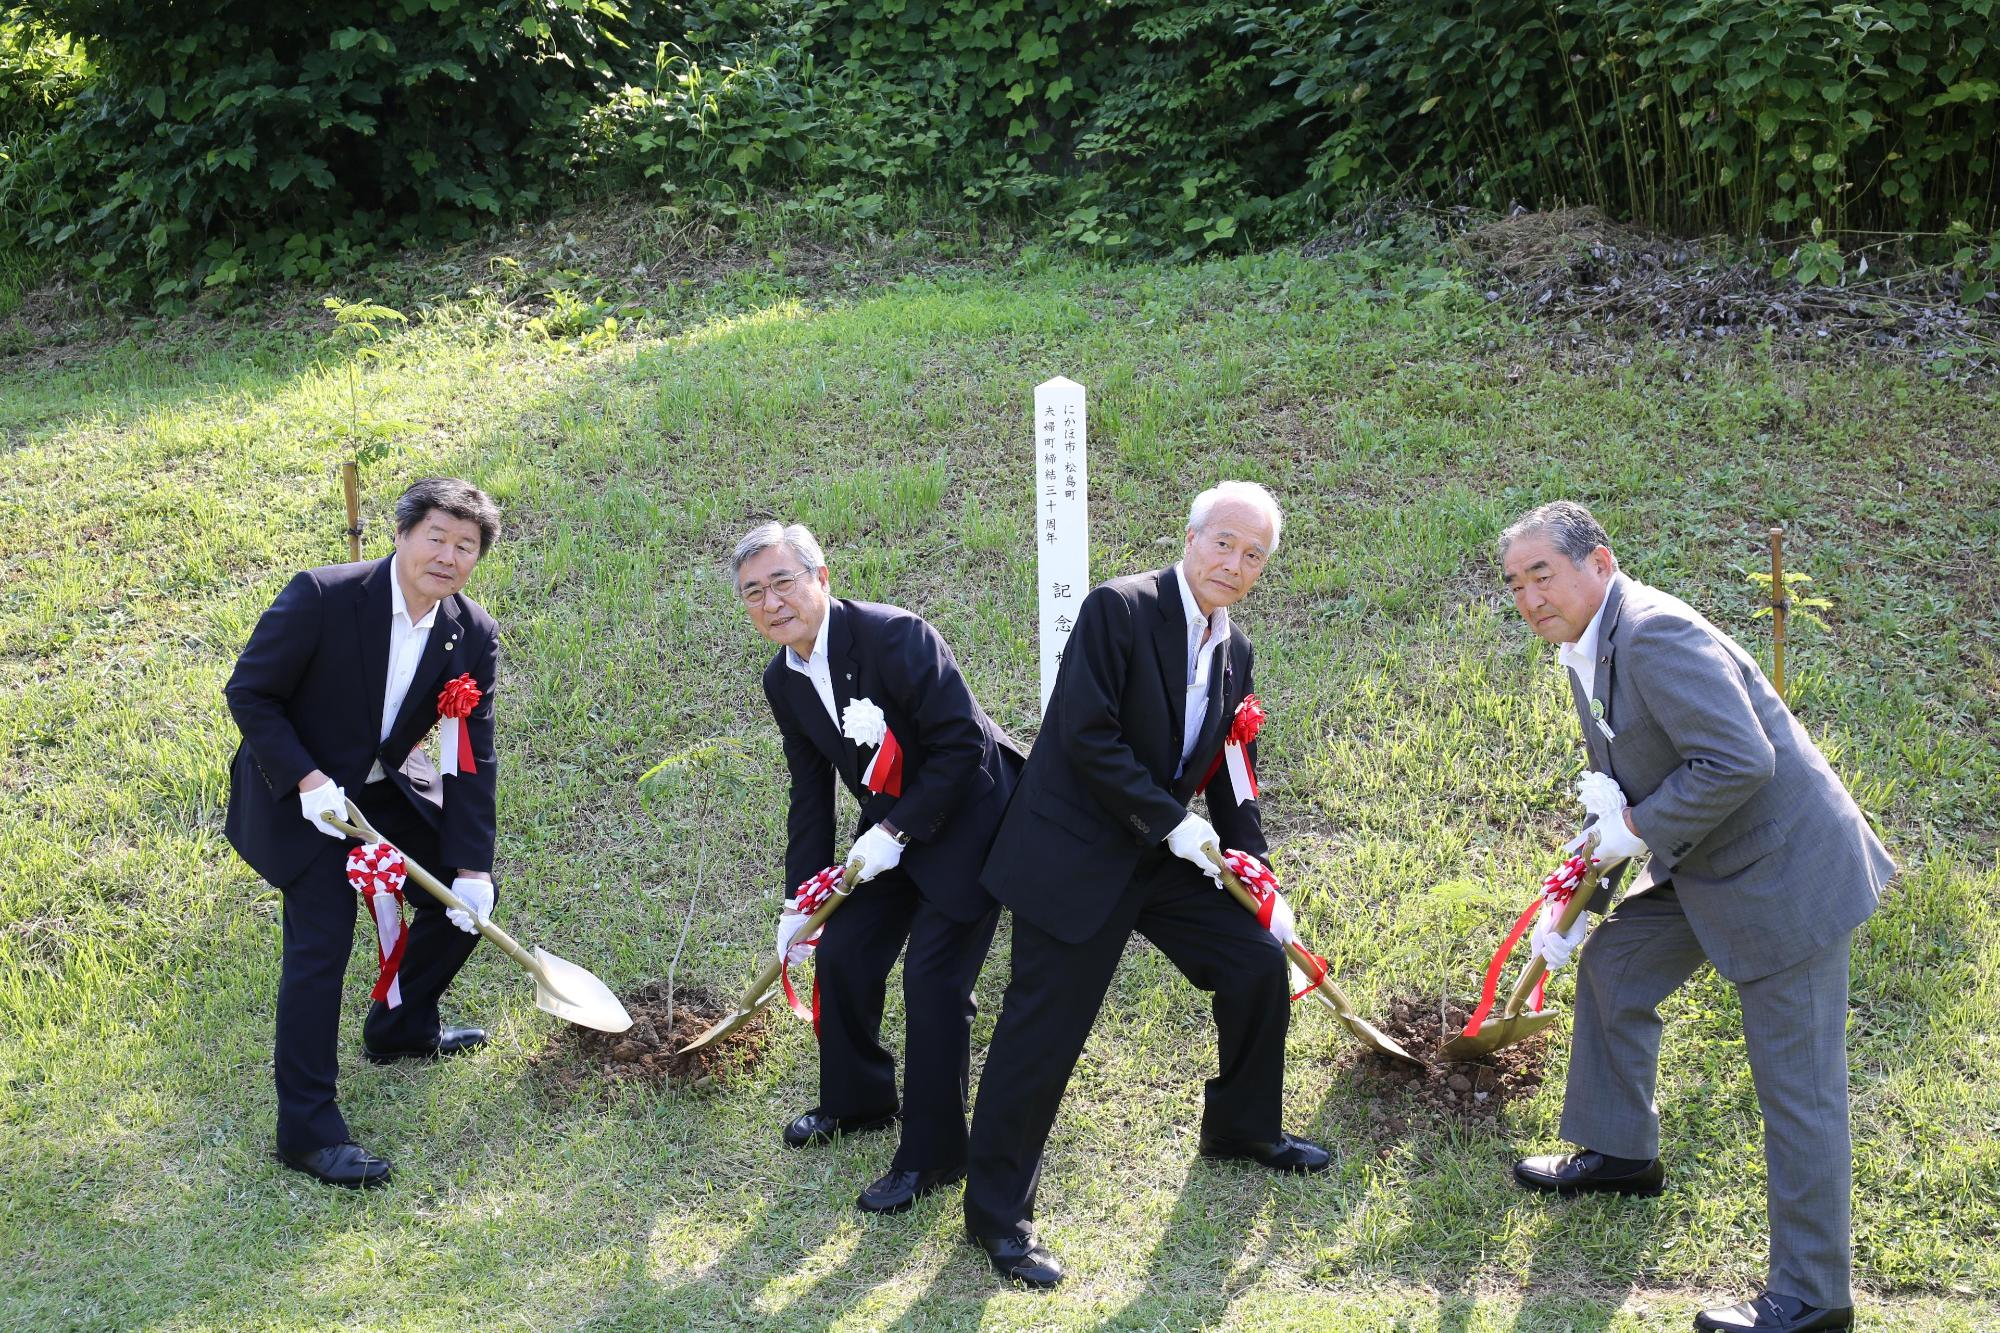 芝生が広がる場所でスーツ姿の4人の男性がシャベルを持って地面を掘っている写真